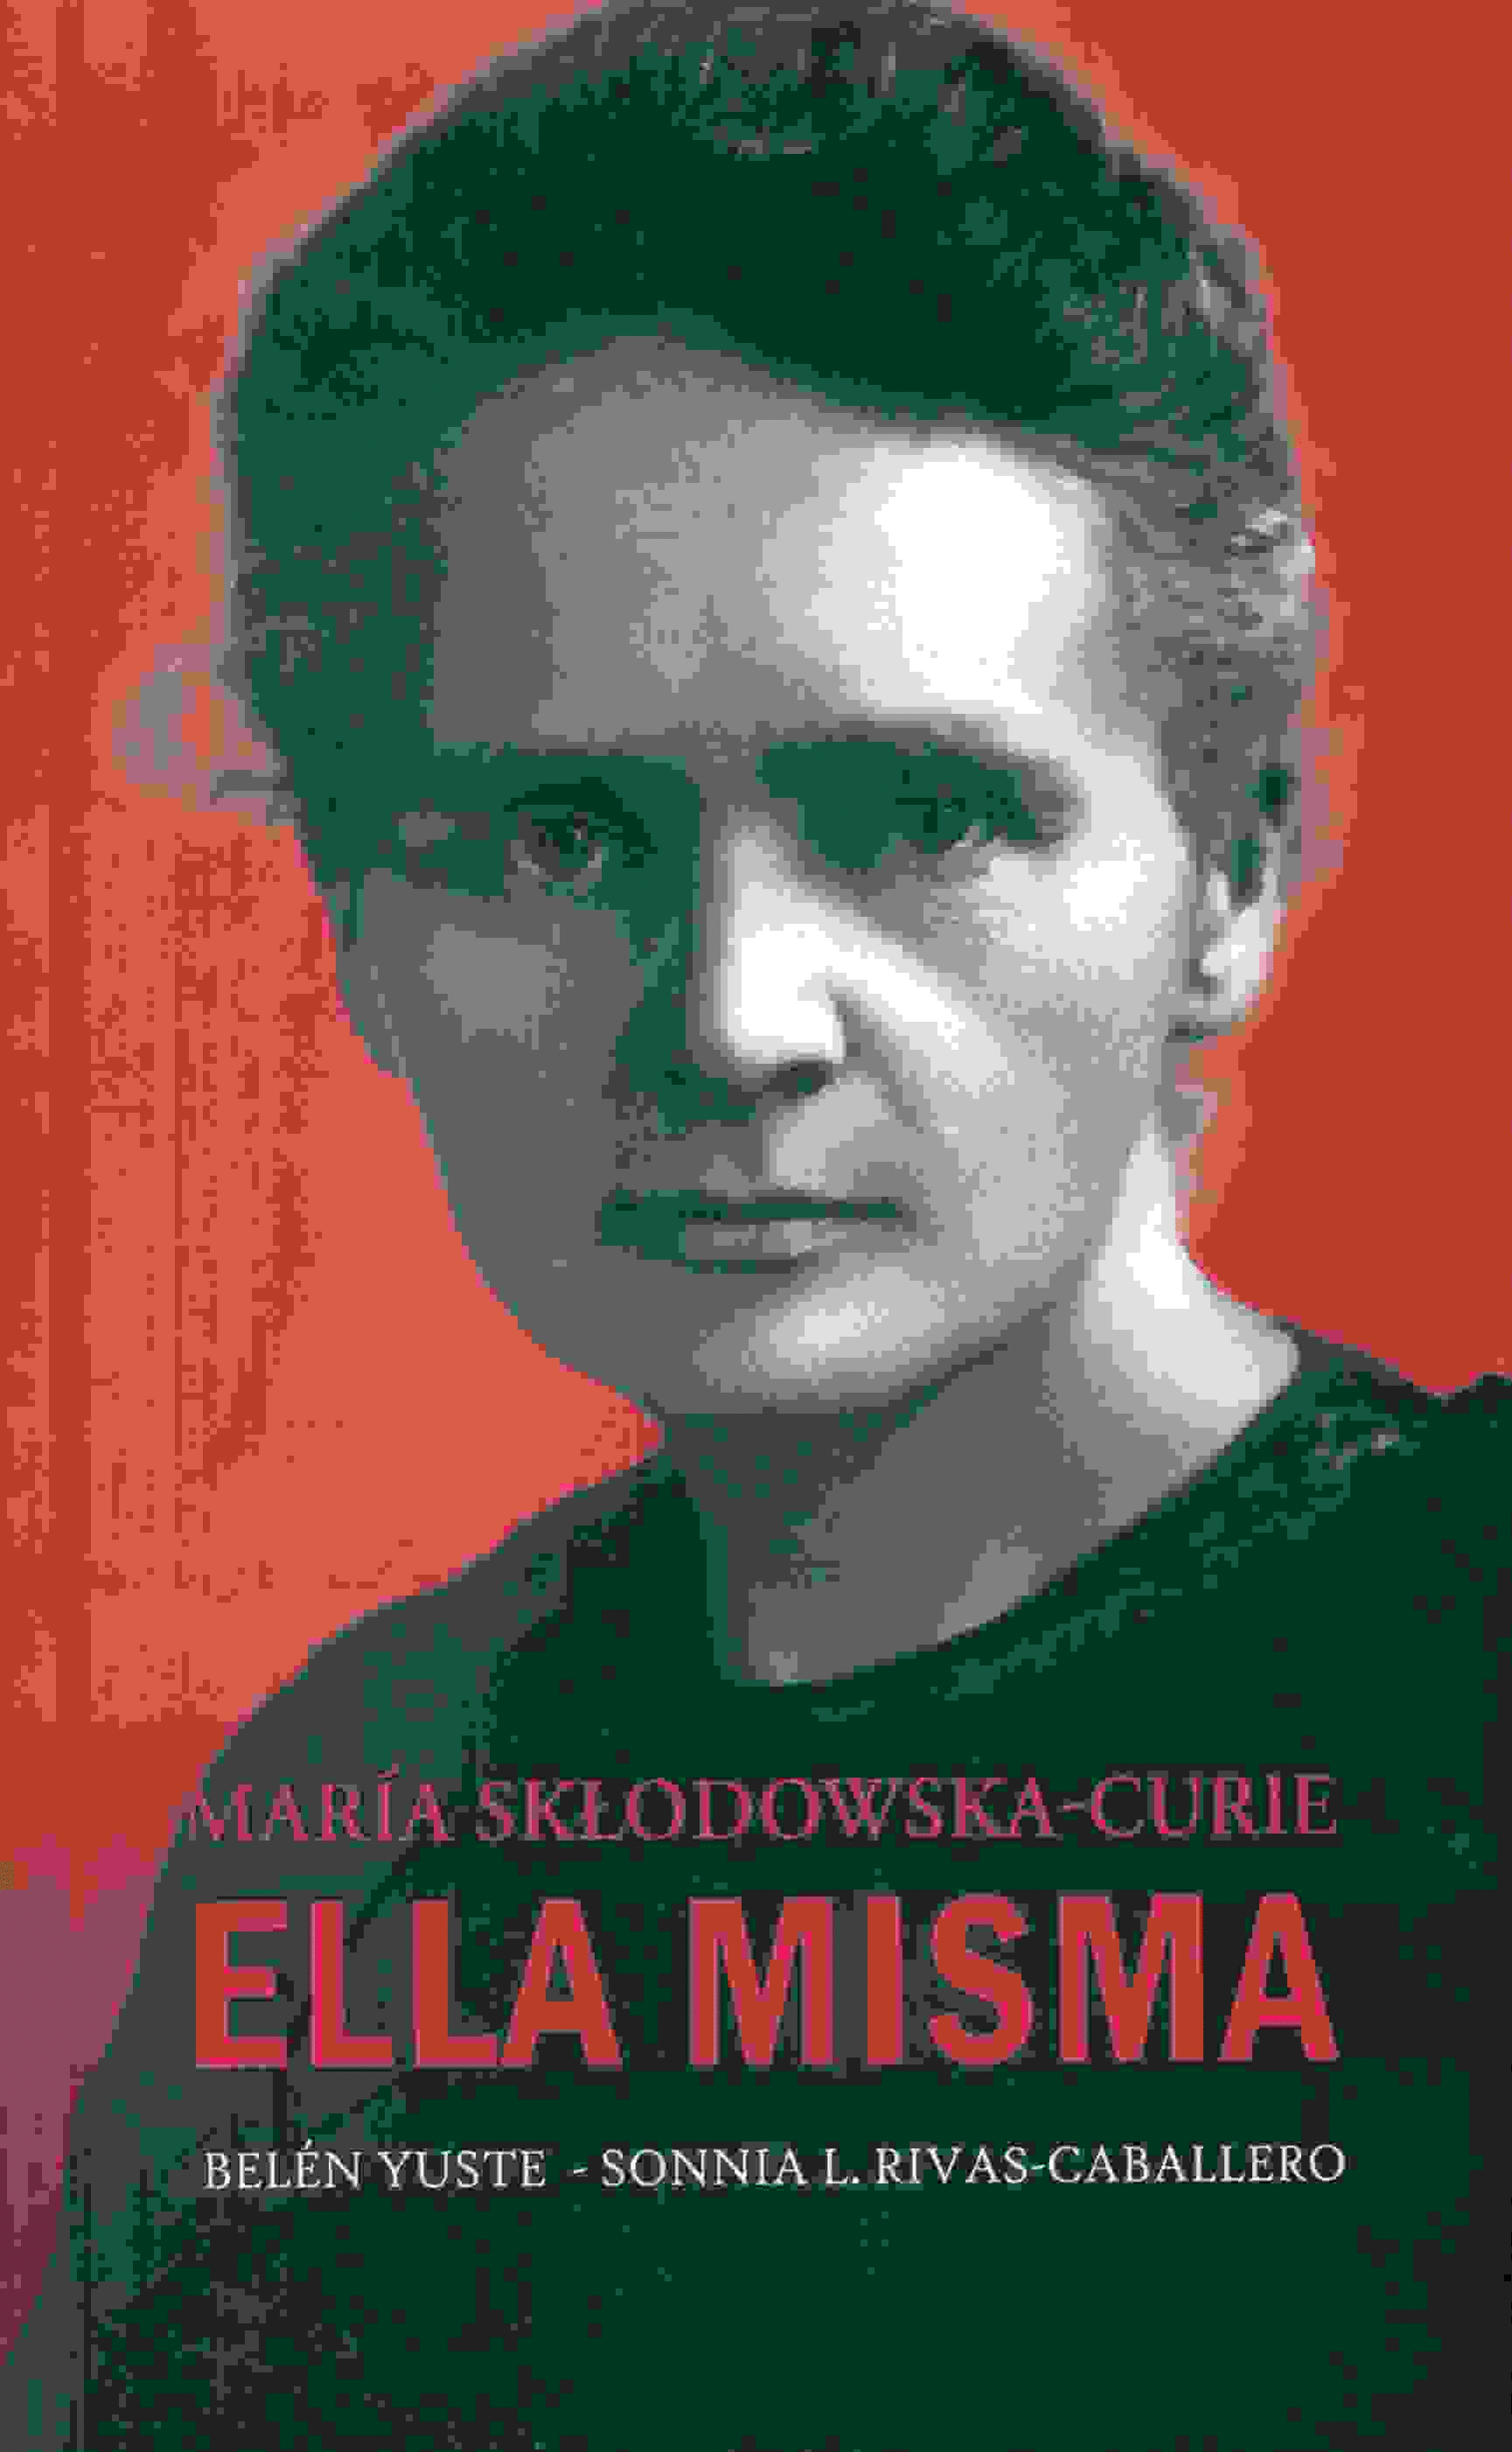 MARIA SKLODOWSKA-CURIE: ELLA MISMA